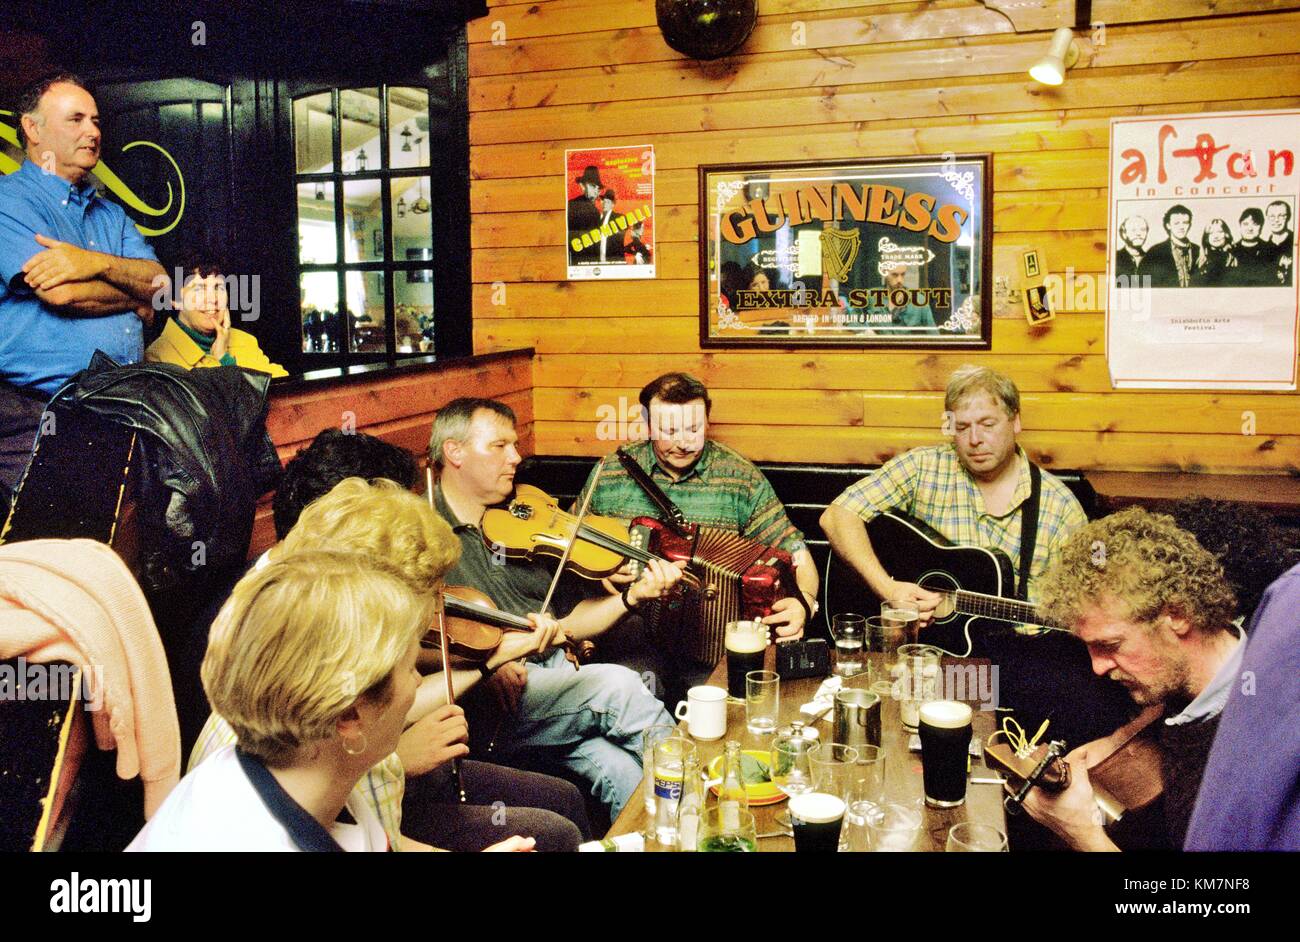 Session de musique pub irlandais traditionnel en jours Bar sur la côte ouest de l'île d'Inishbofin, comté de Galway, Irlande. Banque D'Images